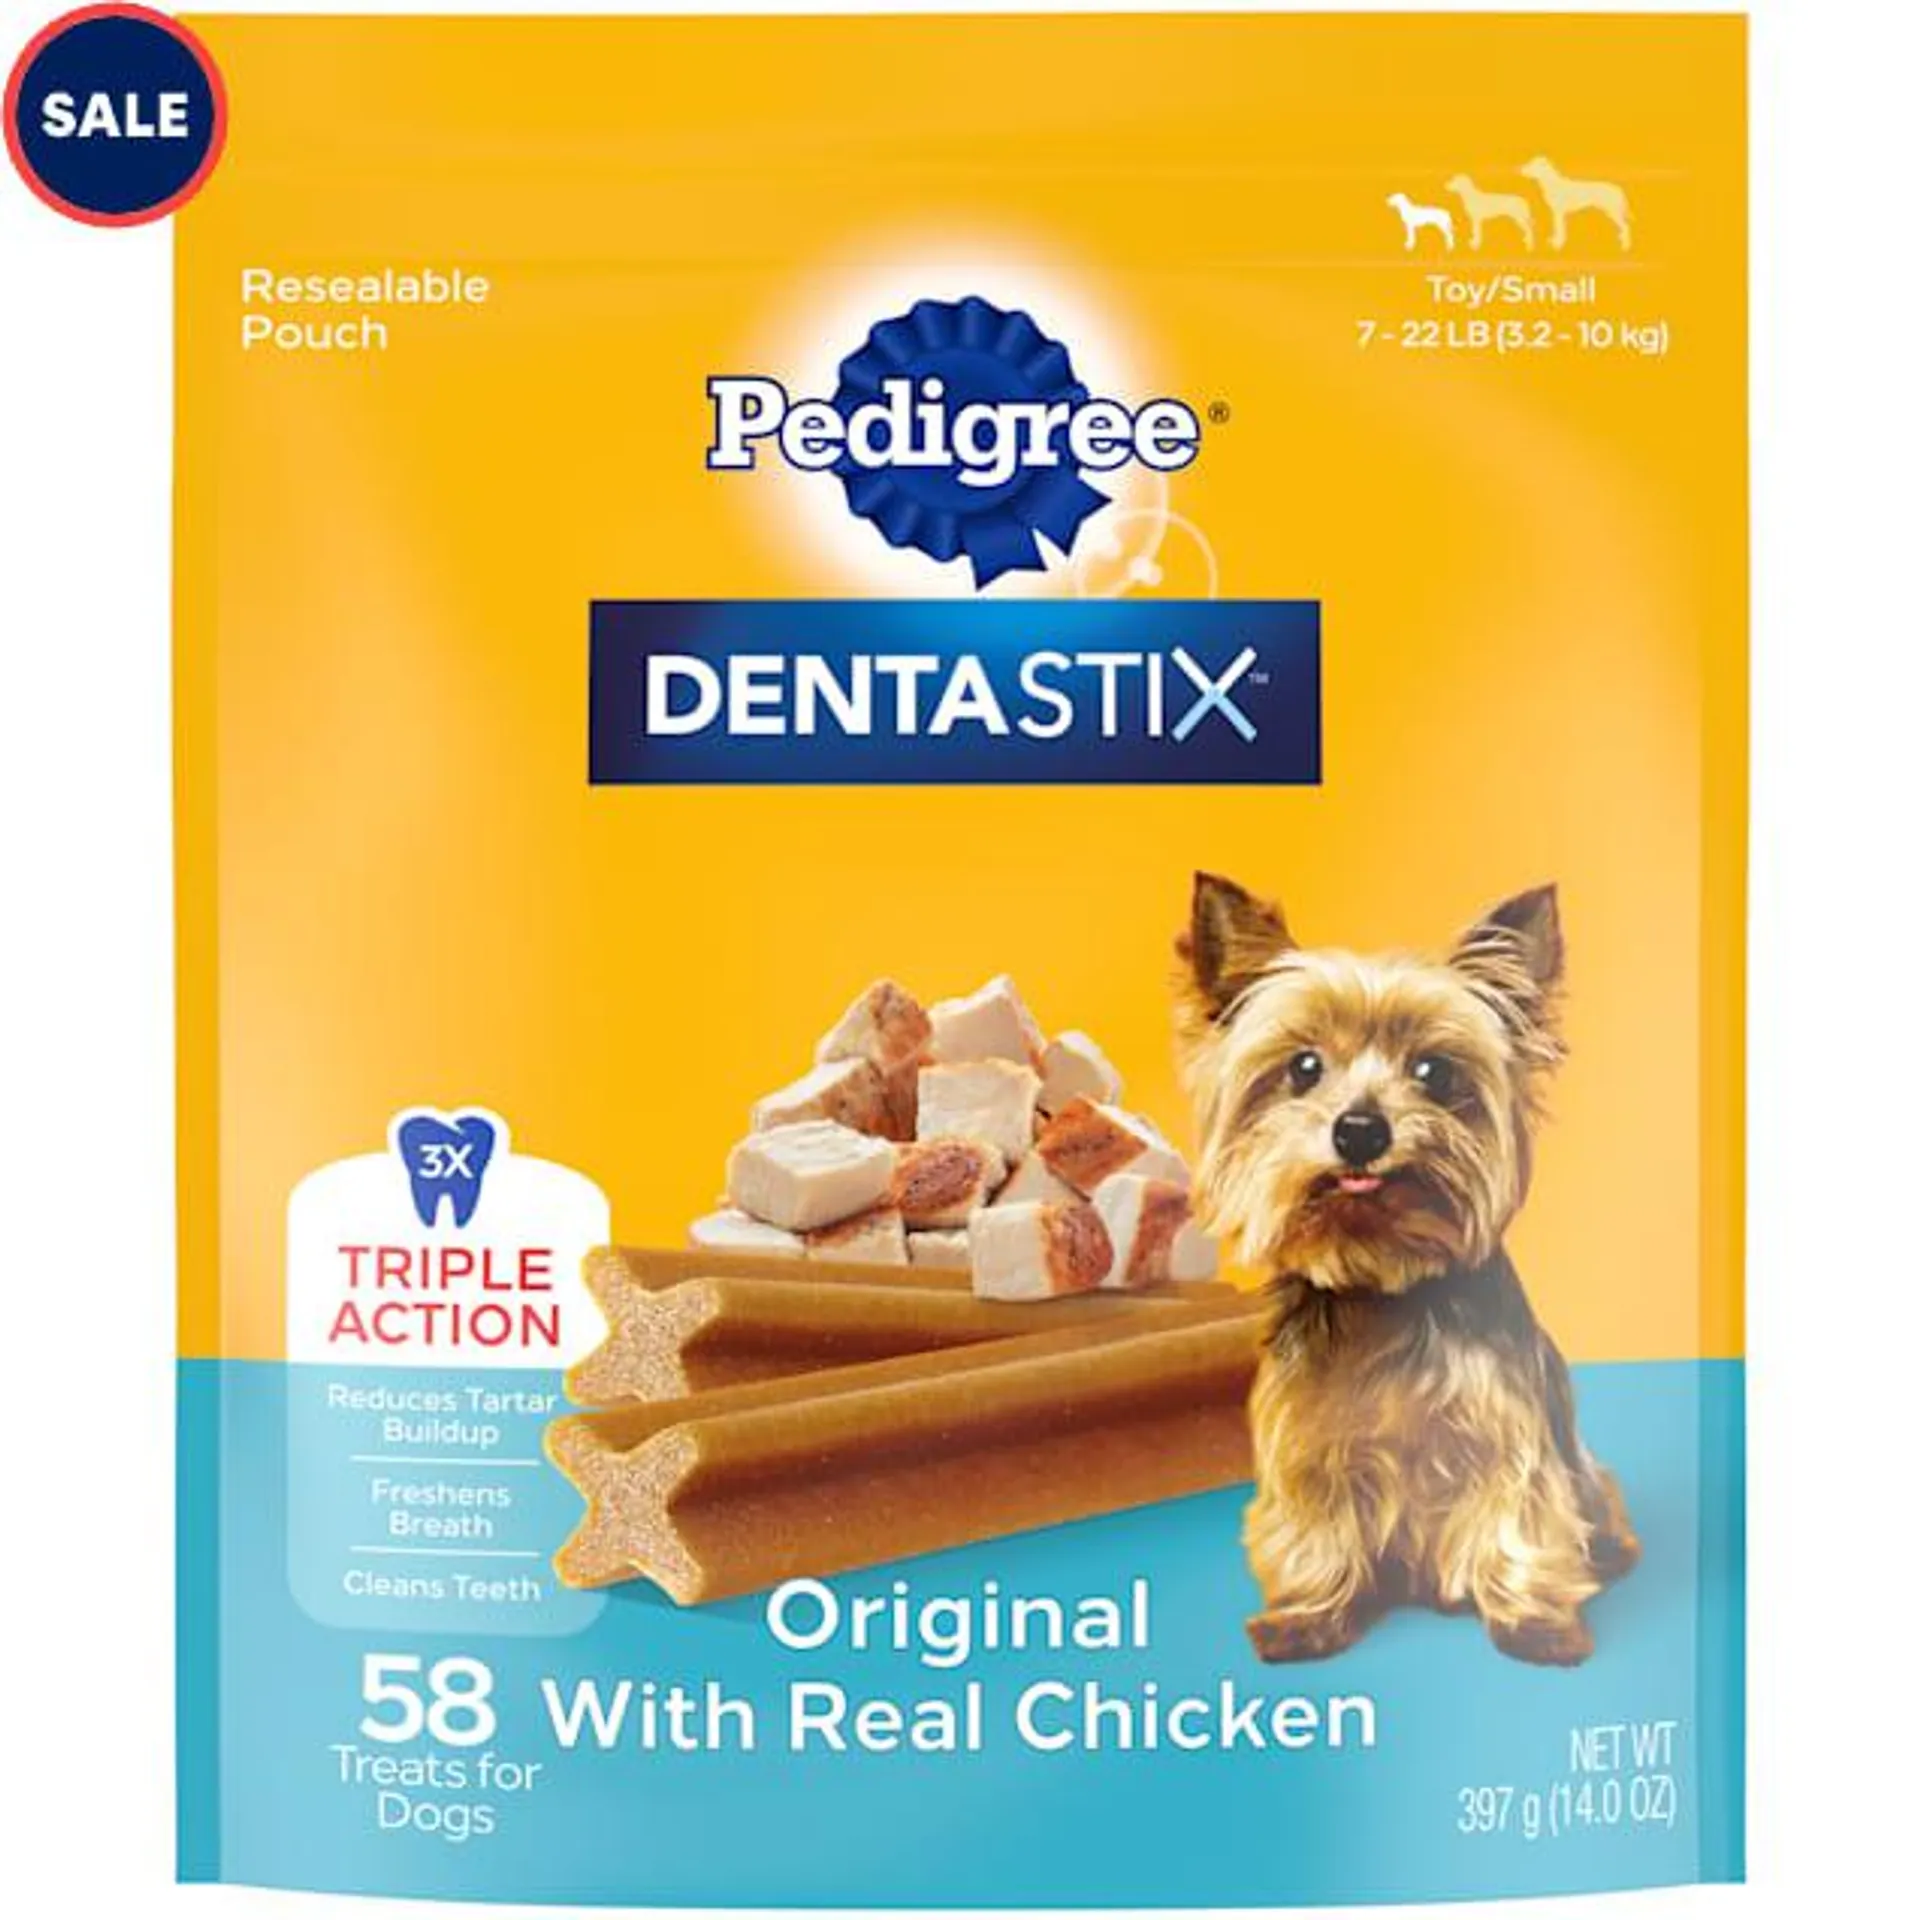 Pedigree Dentastix Original Flavor Bones Toy/Small Dog Dental Treats, 13.97 oz., Count of 58